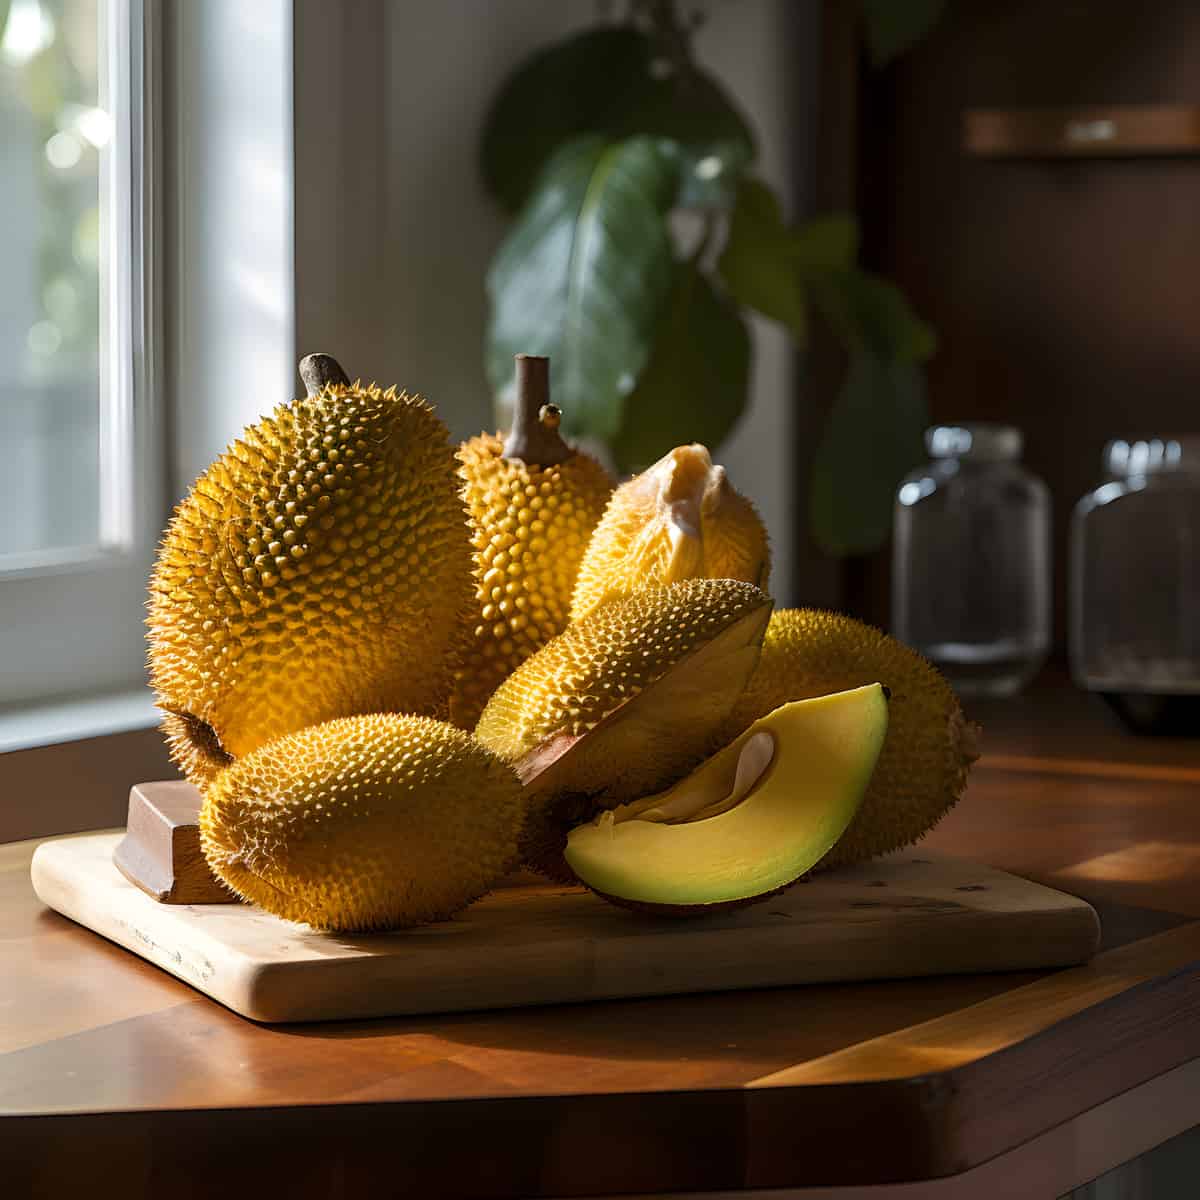 Jackfruit on a kitchen counter